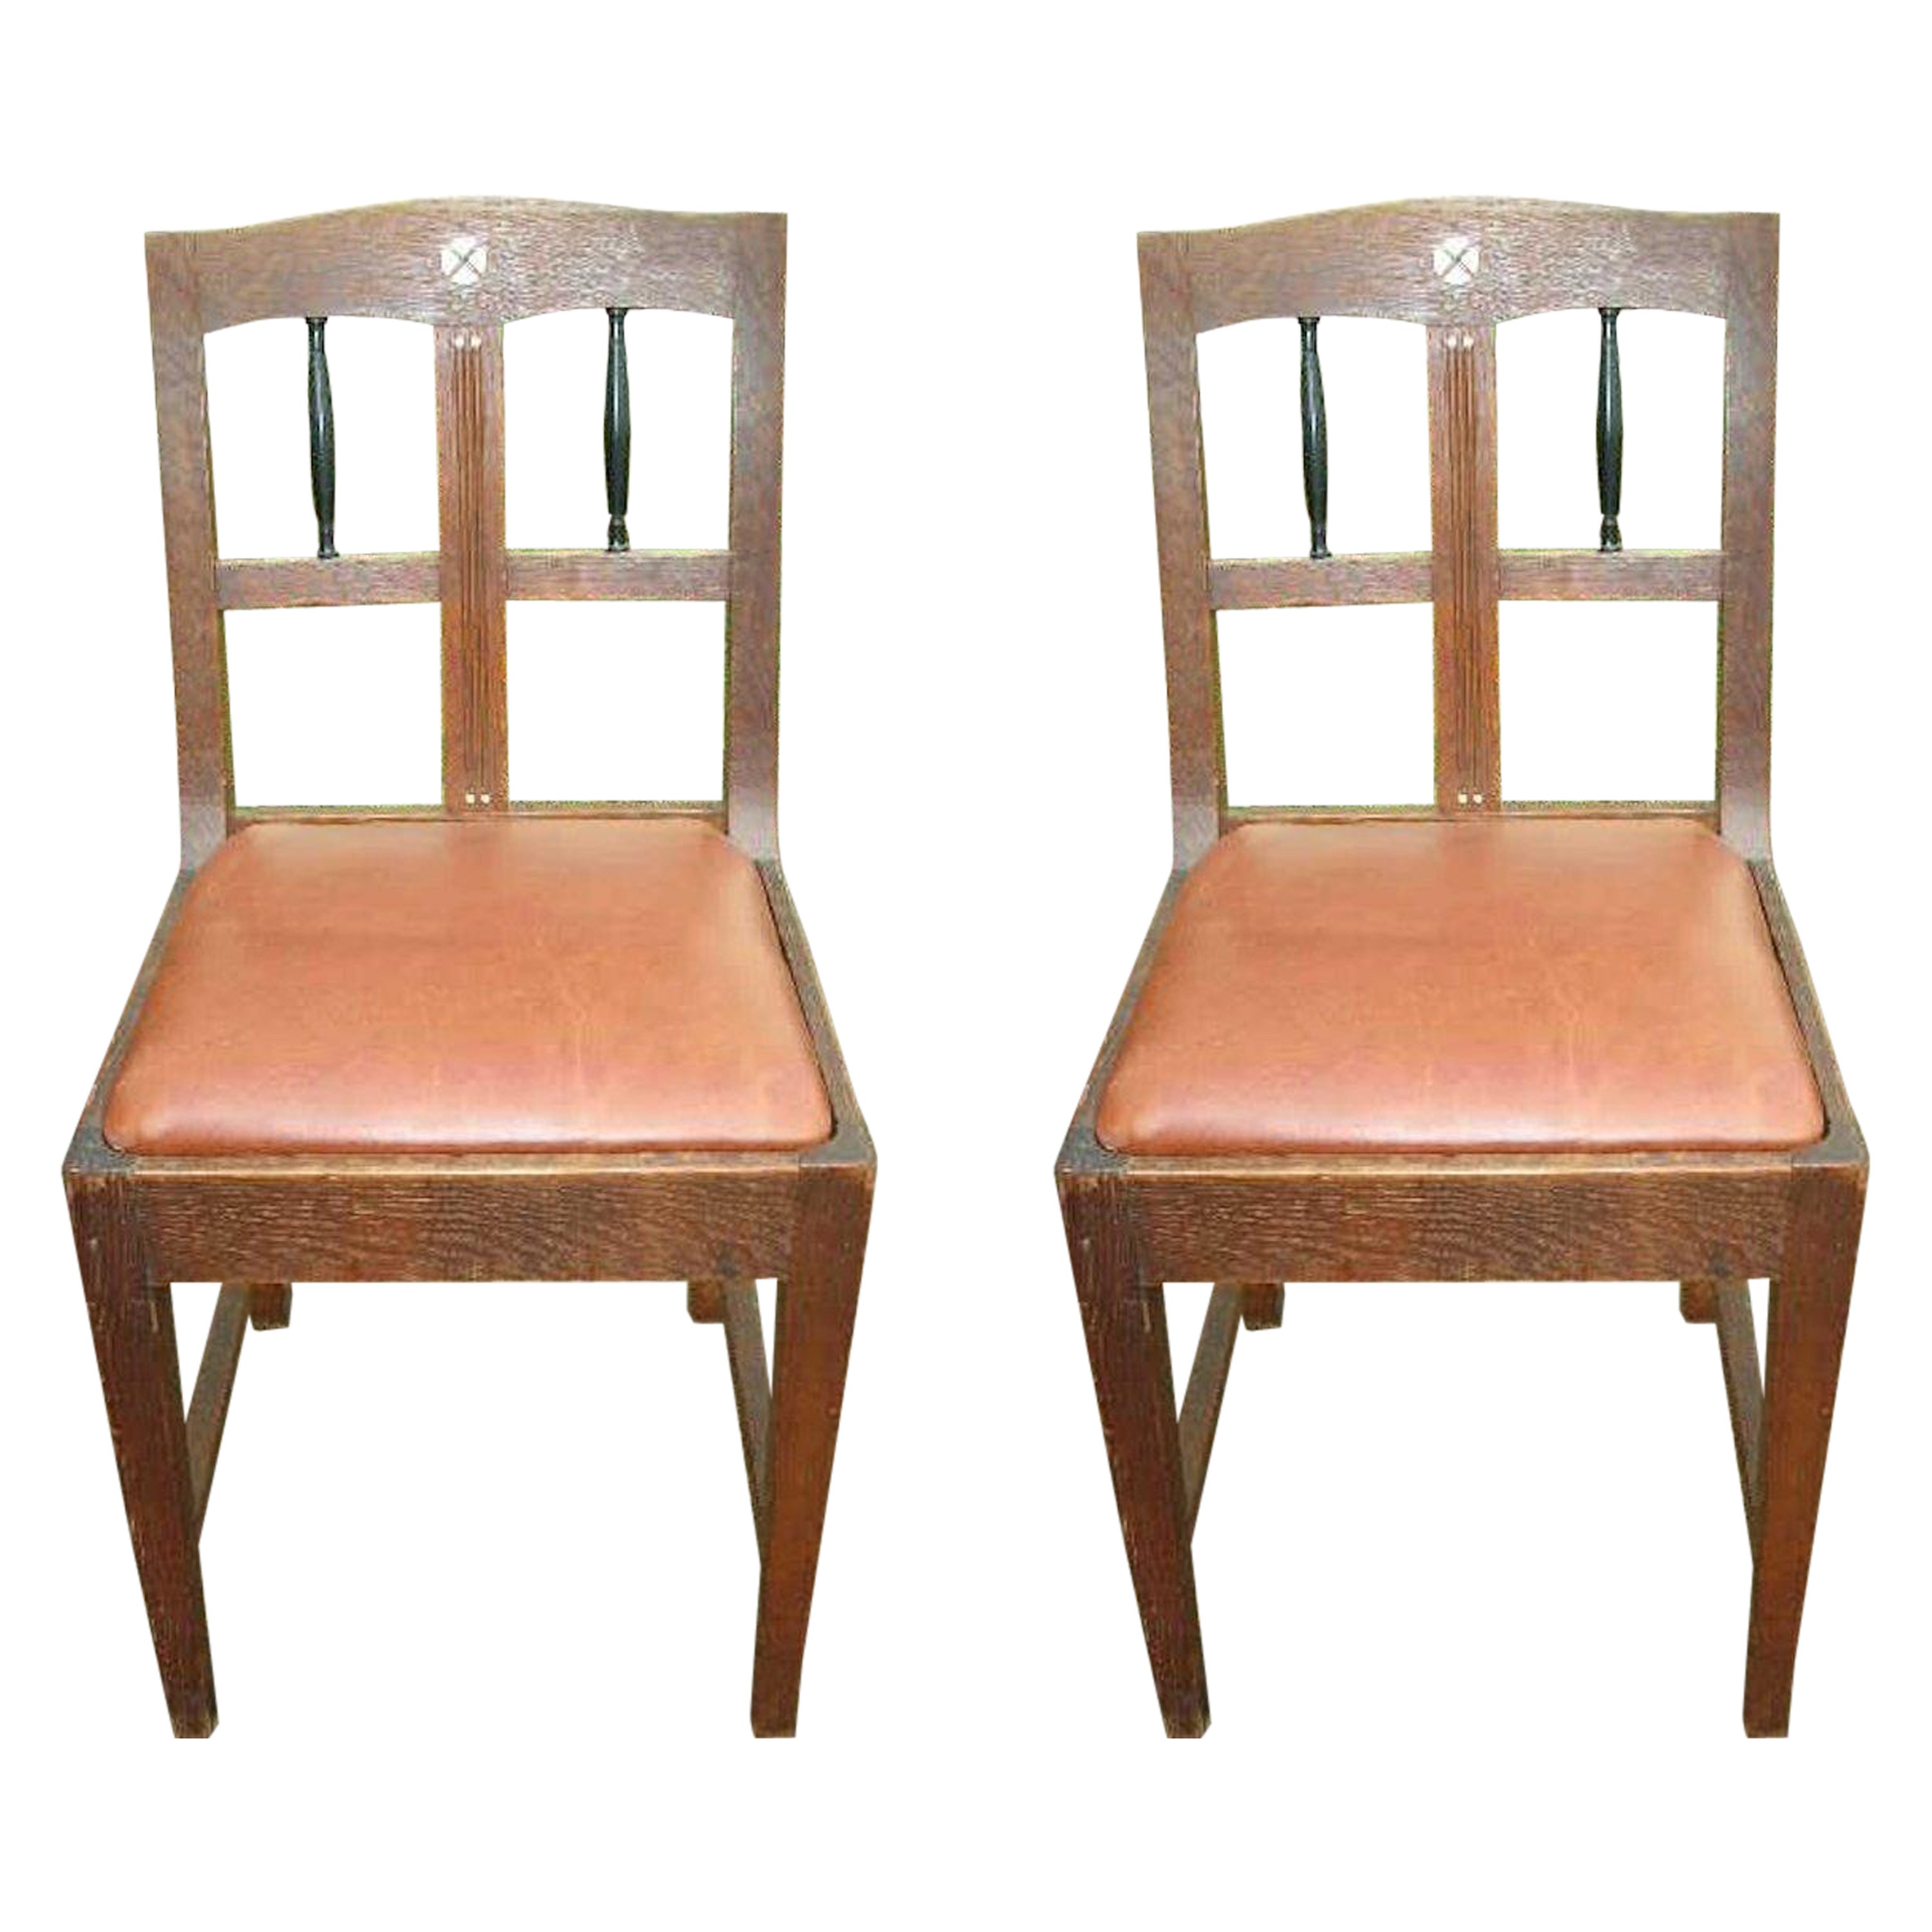 Paar Beistellstühle aus Eichenholz im sezessionistischen Stil mit ebonisierten Spindeln